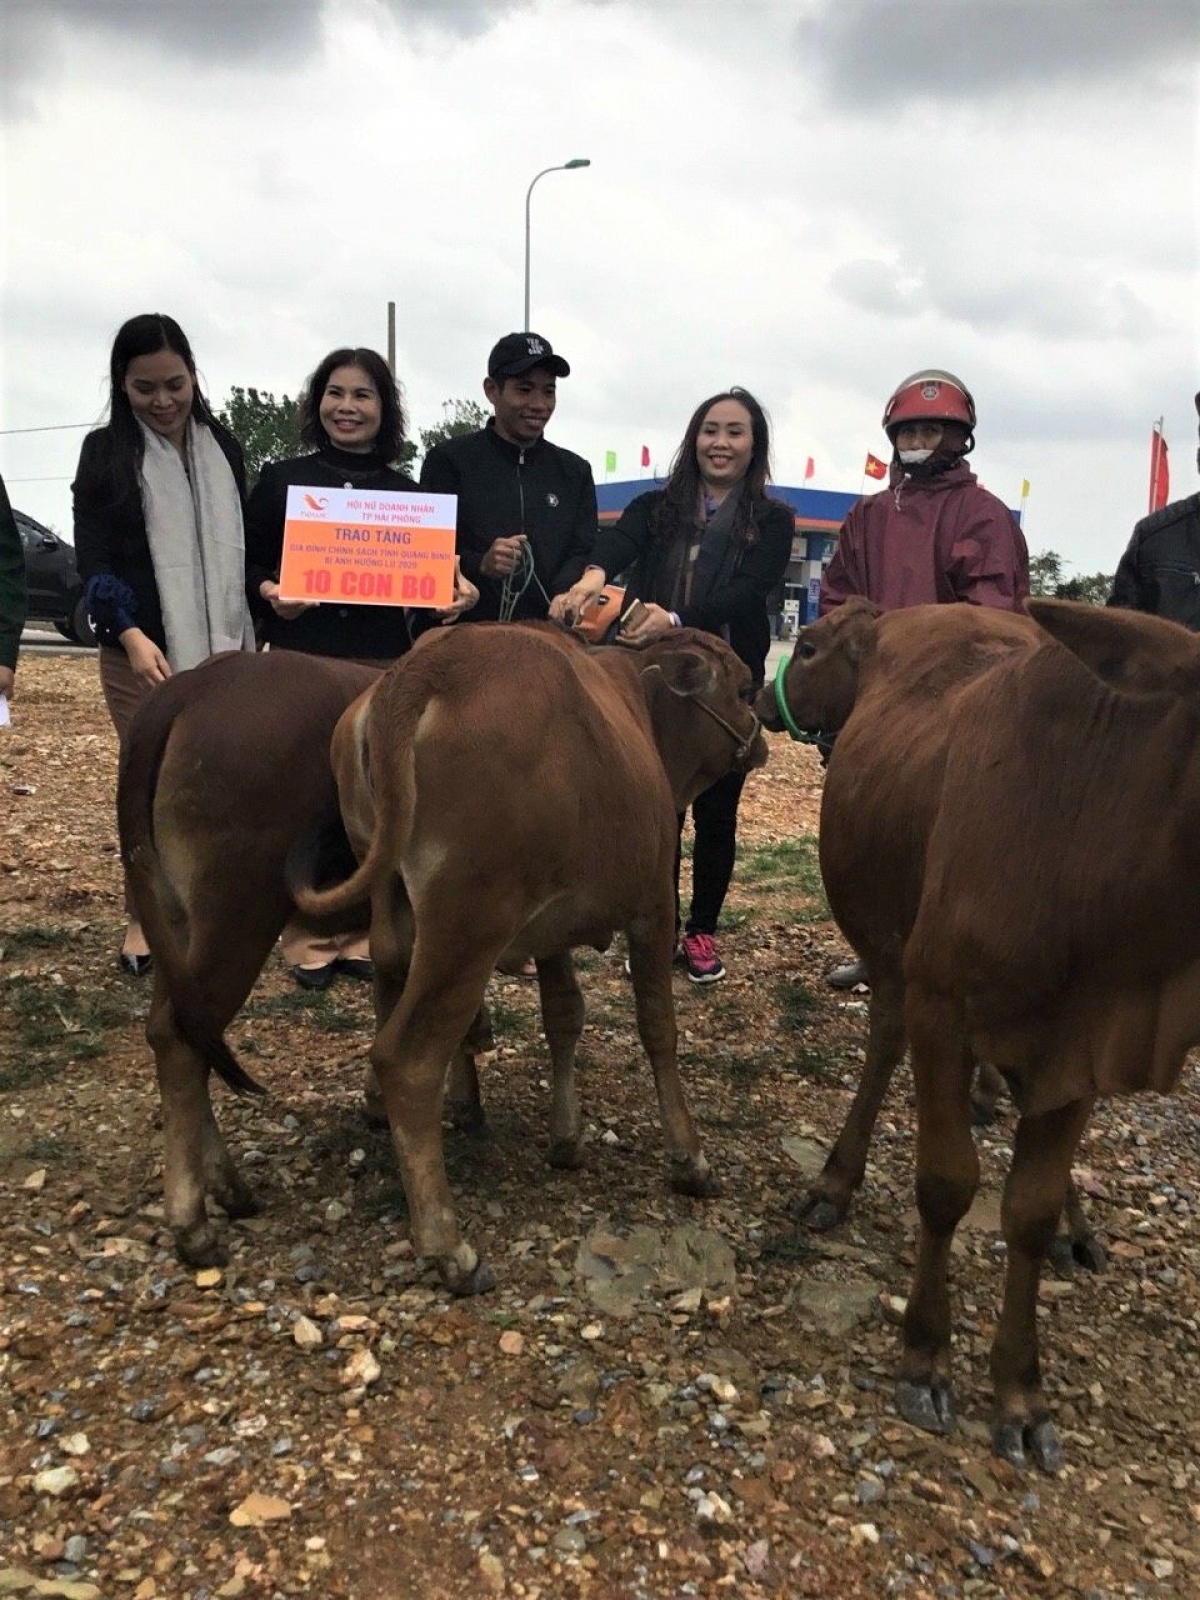 Bà Minh Hà cùng Hội Nữ doanh nhân Hải Phòng tặng 10 con bò cho gia đình chính sách bị ảnh hưởng lũ lụt năm 2020 ở tỉnh Quảng Bình